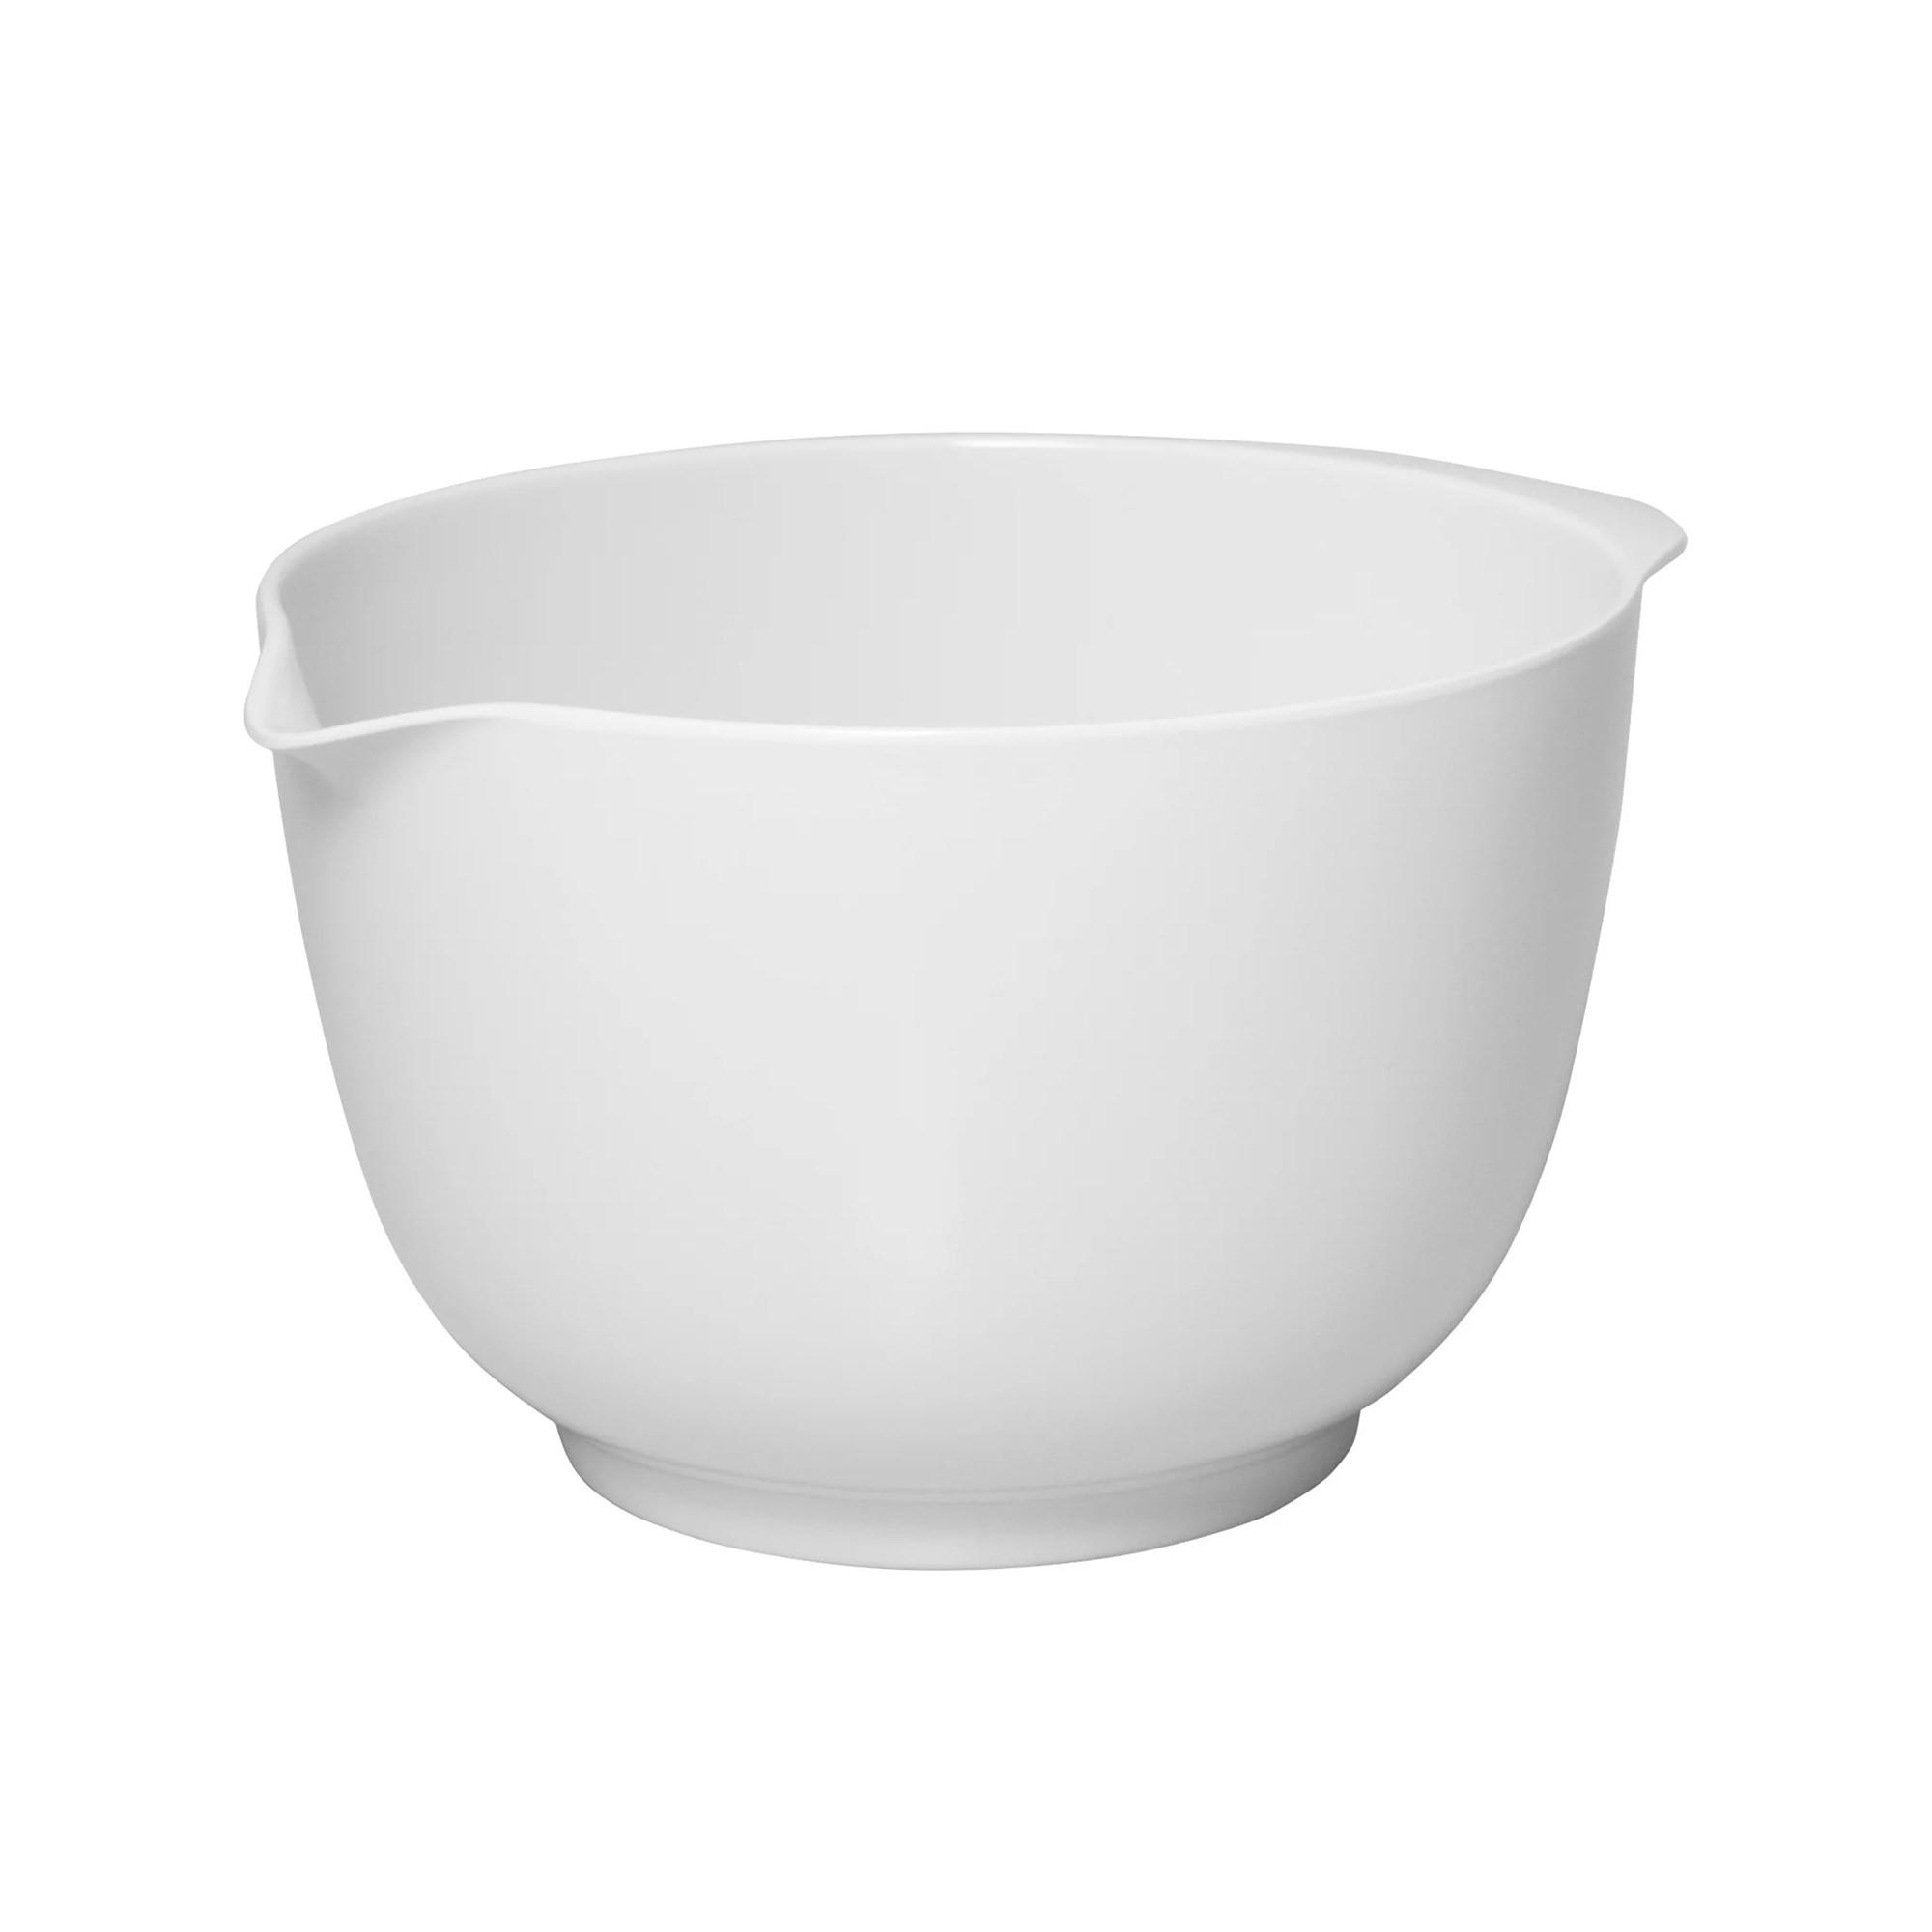 Avanti Melamine Mixing Bowl 18cm - 1.8L White Image 1